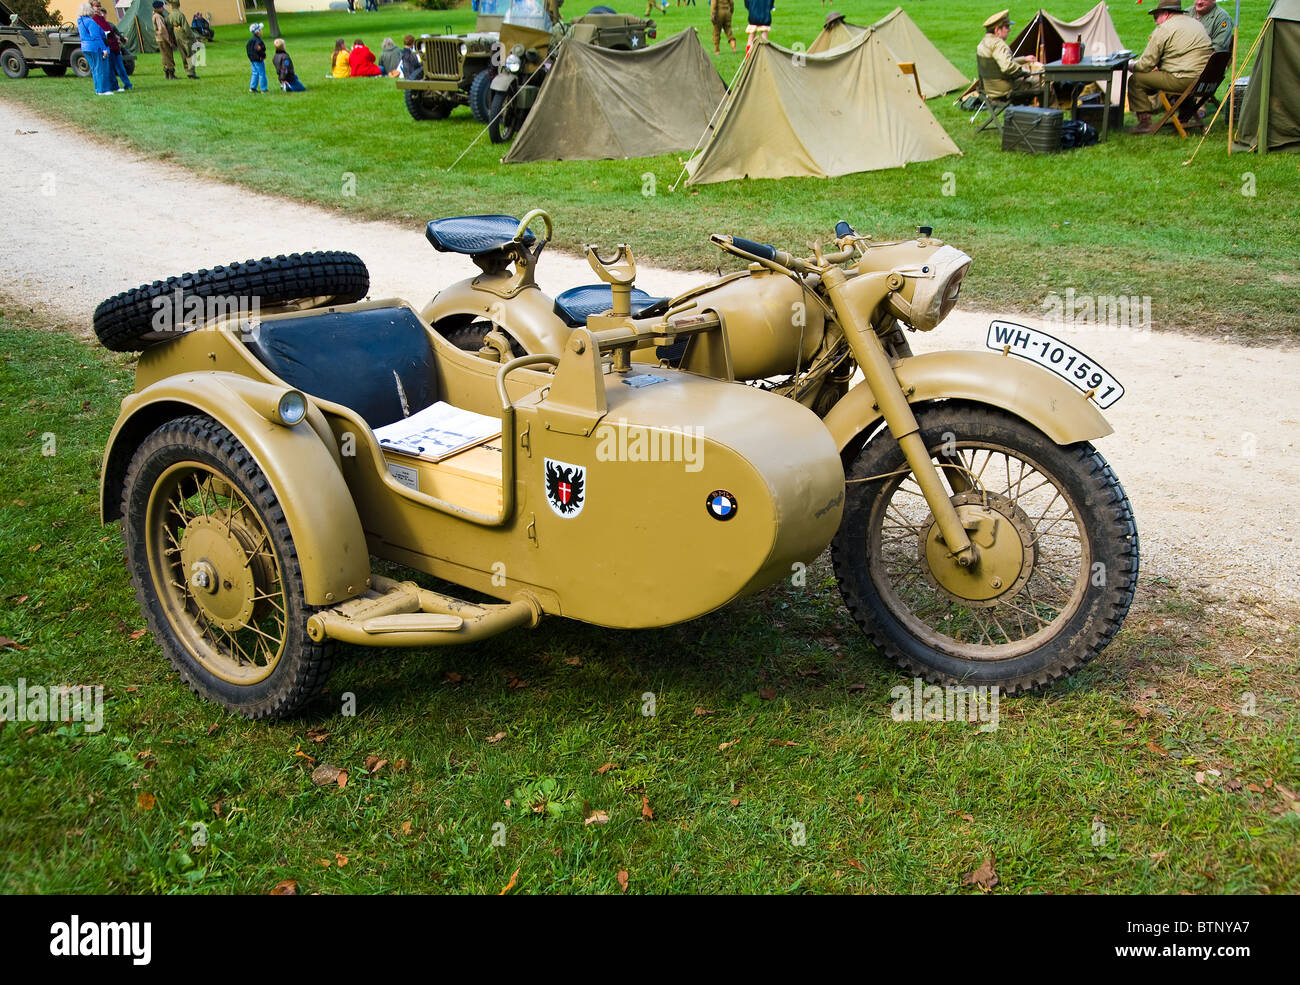 BMW Motorrad von WWII Zeit, Bundeswehr Fahrzeug Seite Warenkorb  Stockfotografie - Alamy